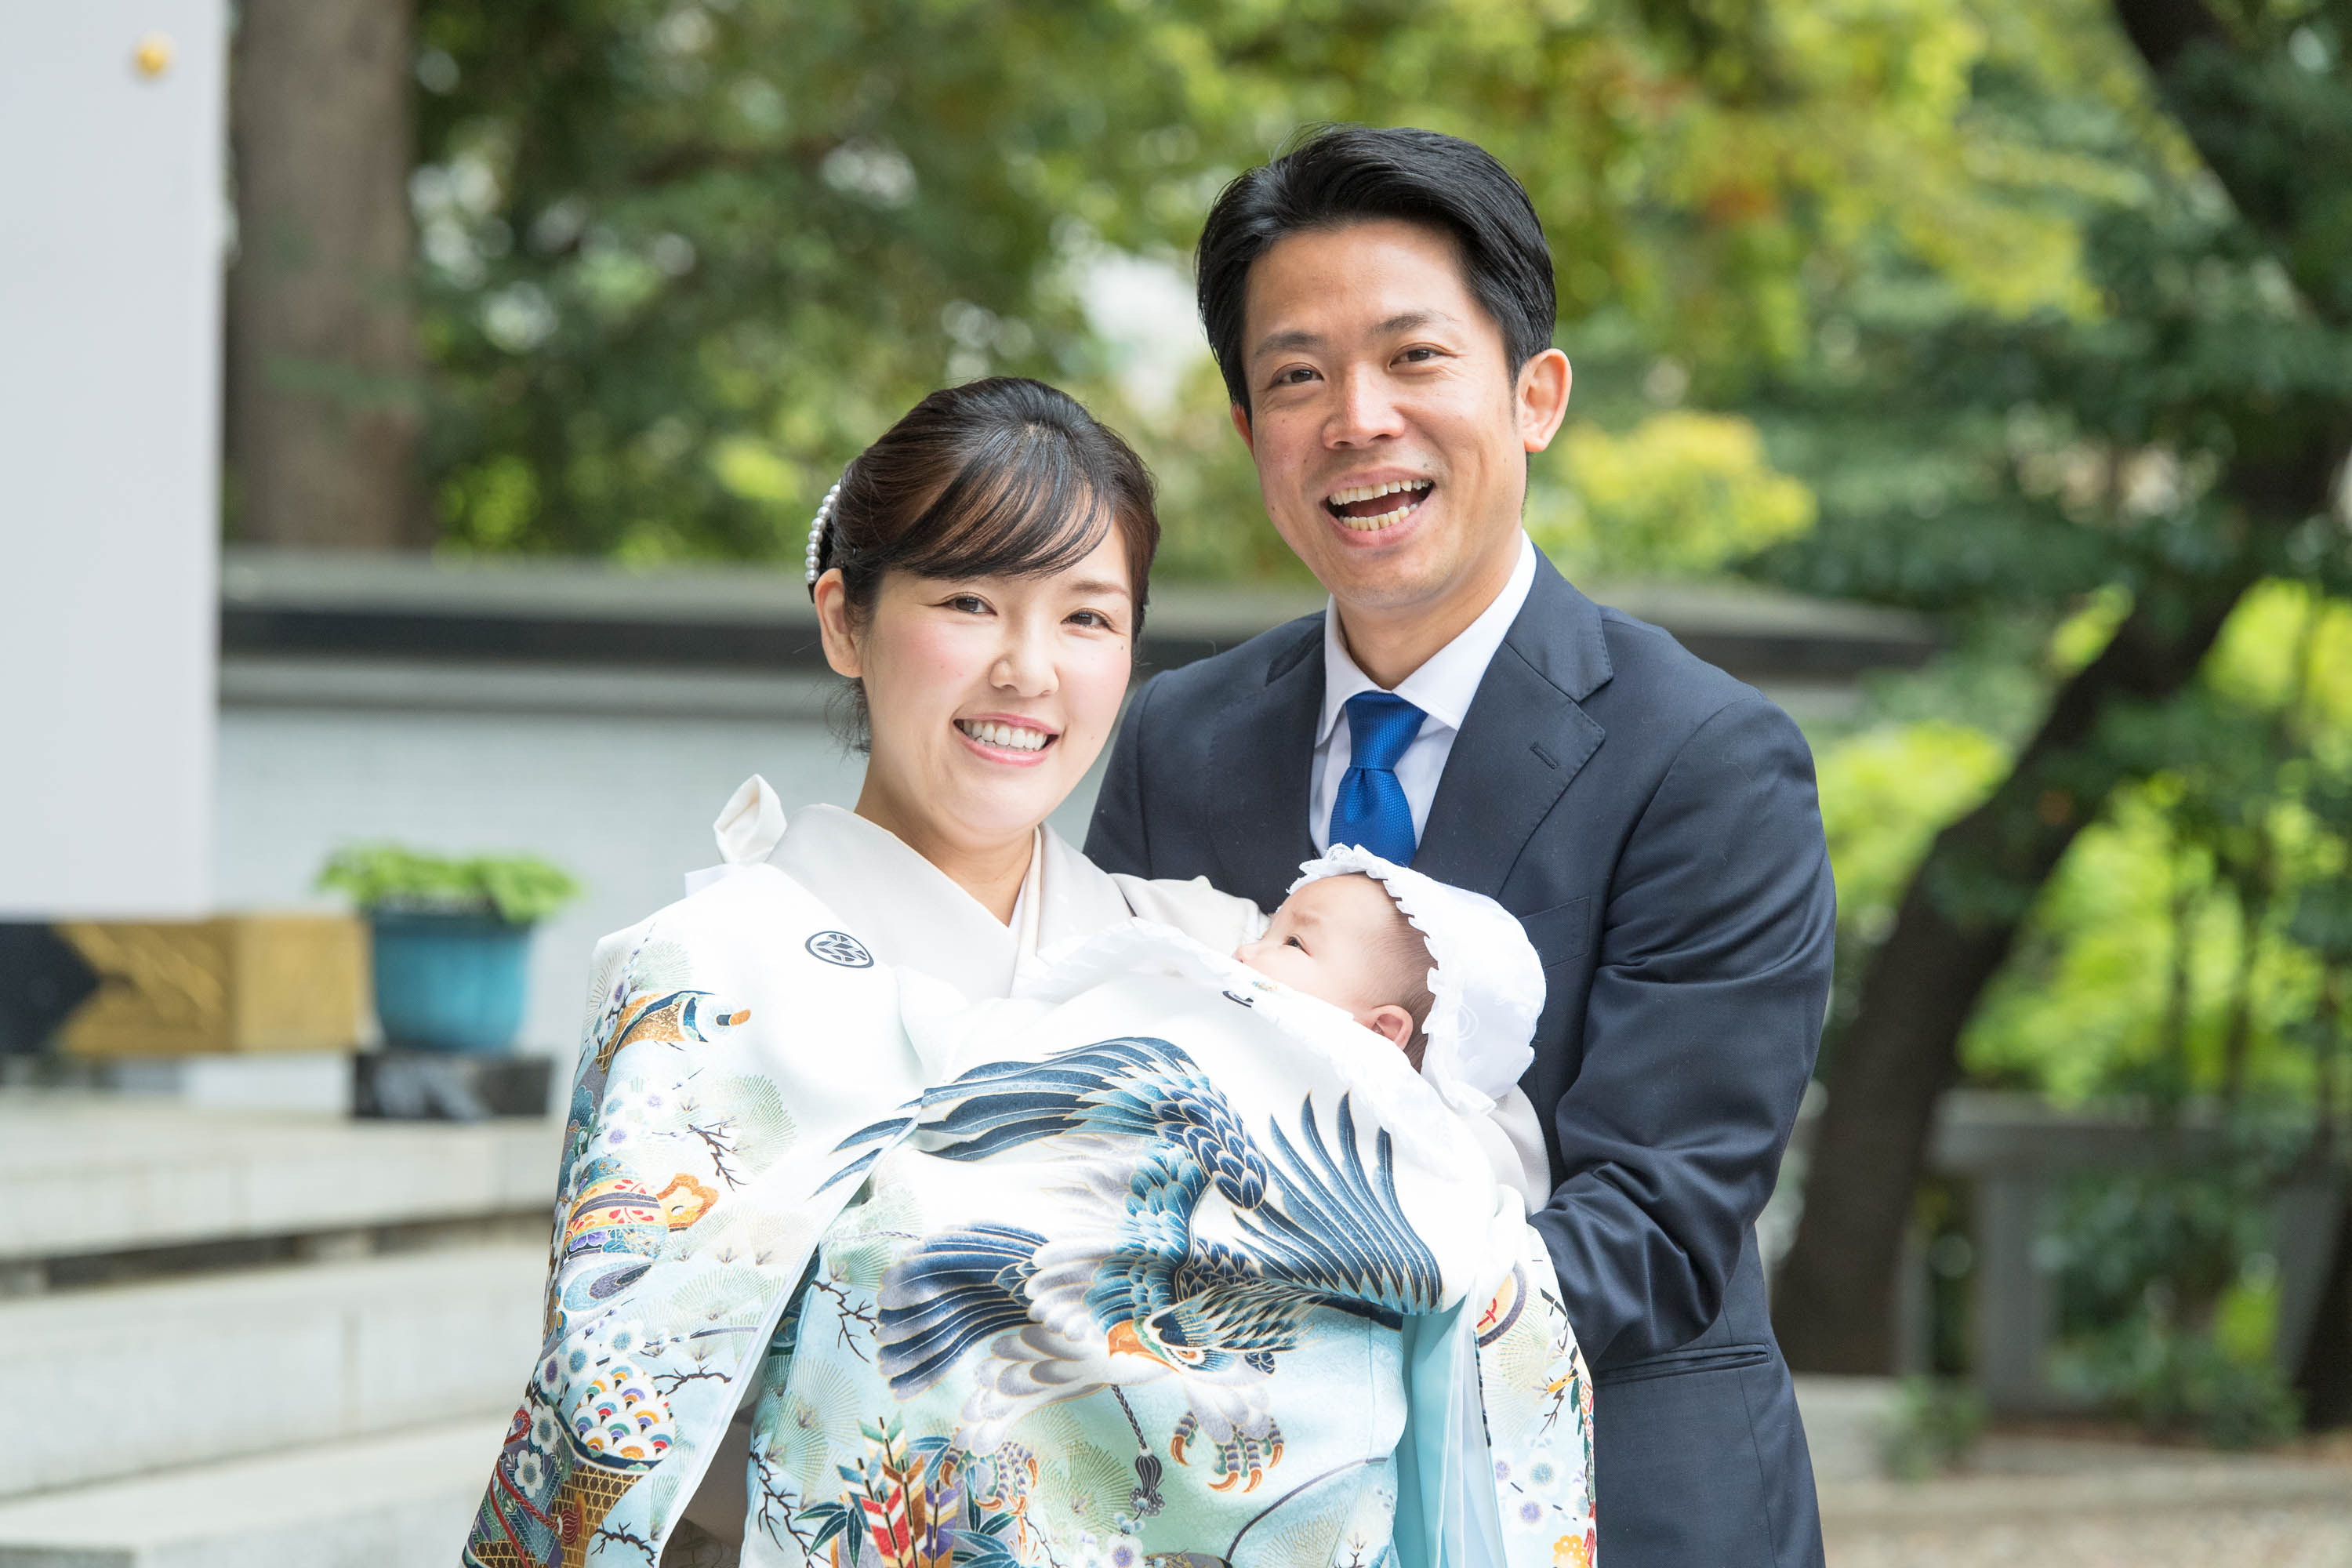 掛着姿の赤ちゃんを抱く笑顔の和装の女性と男性